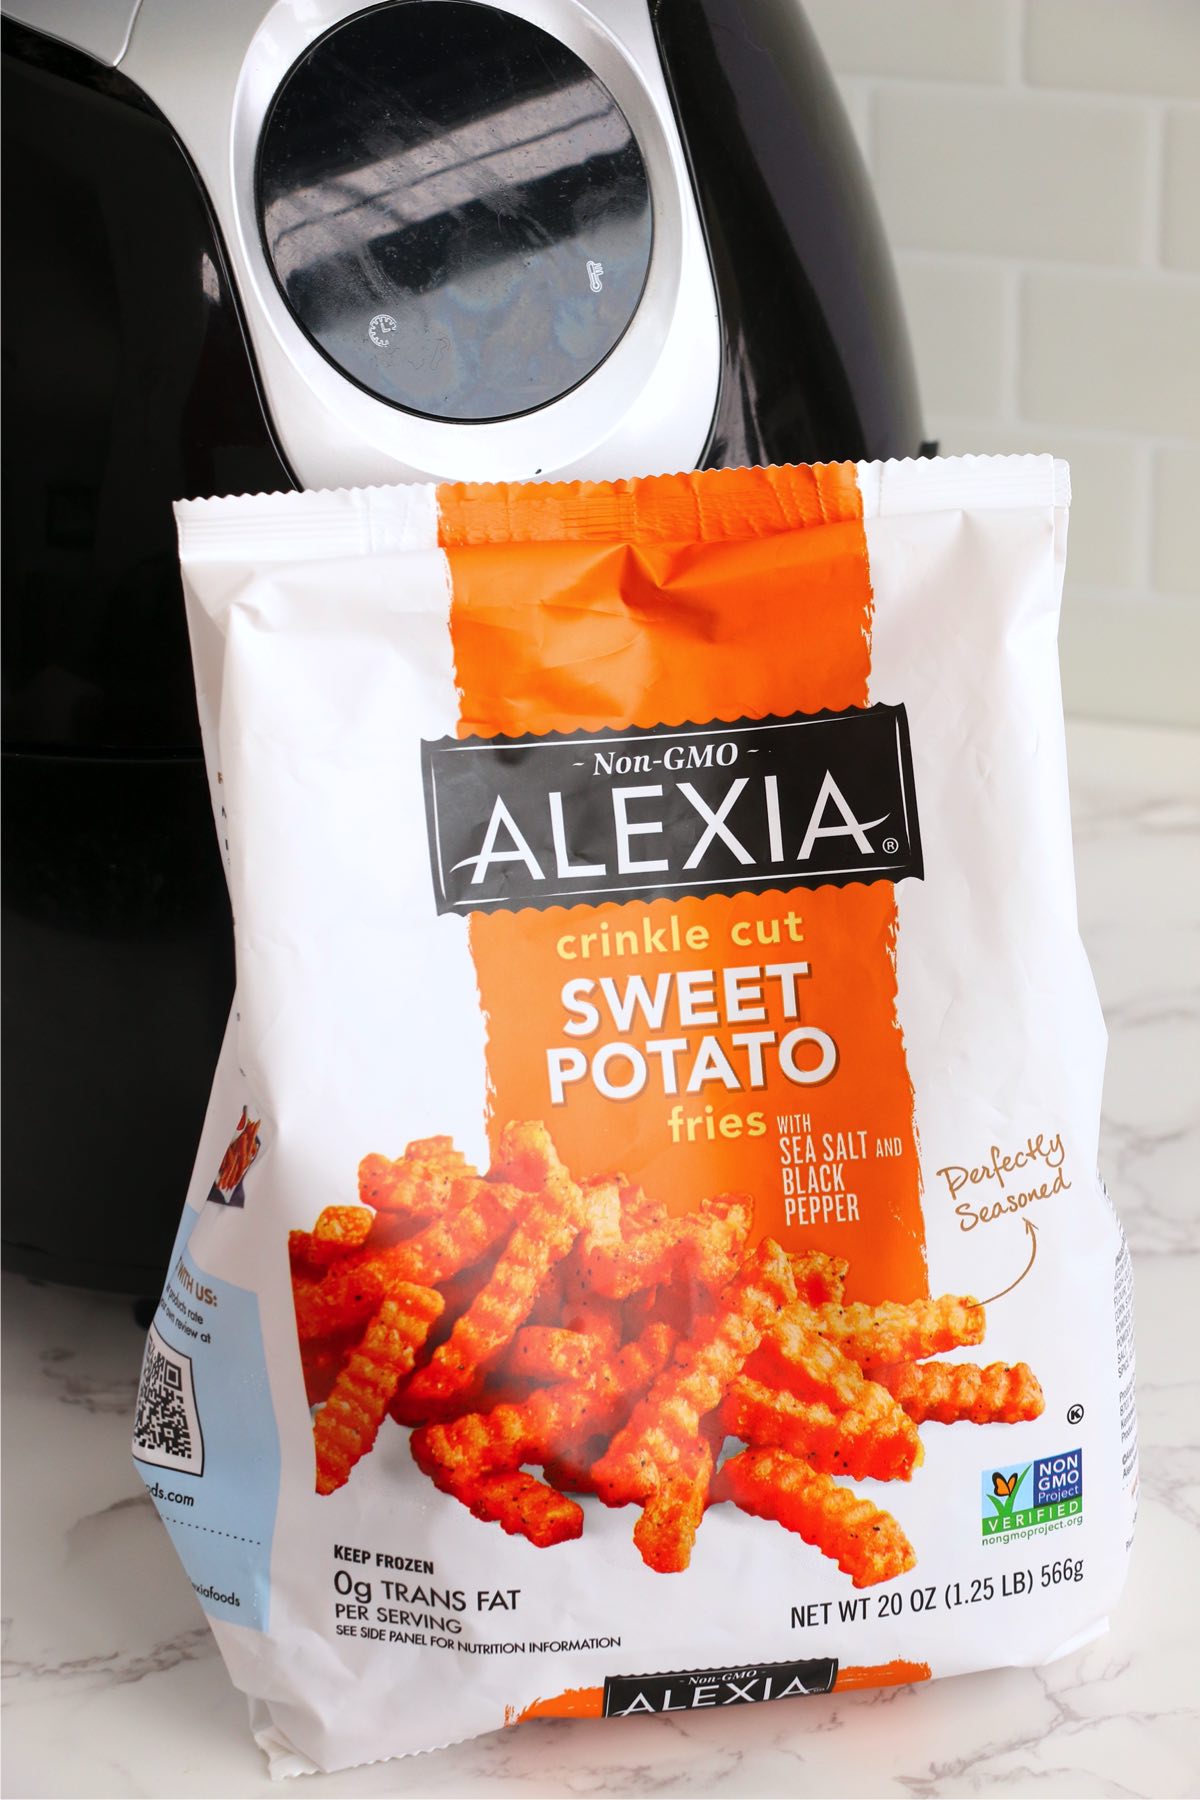 Bag of Alexia sweet potato fries on counter.